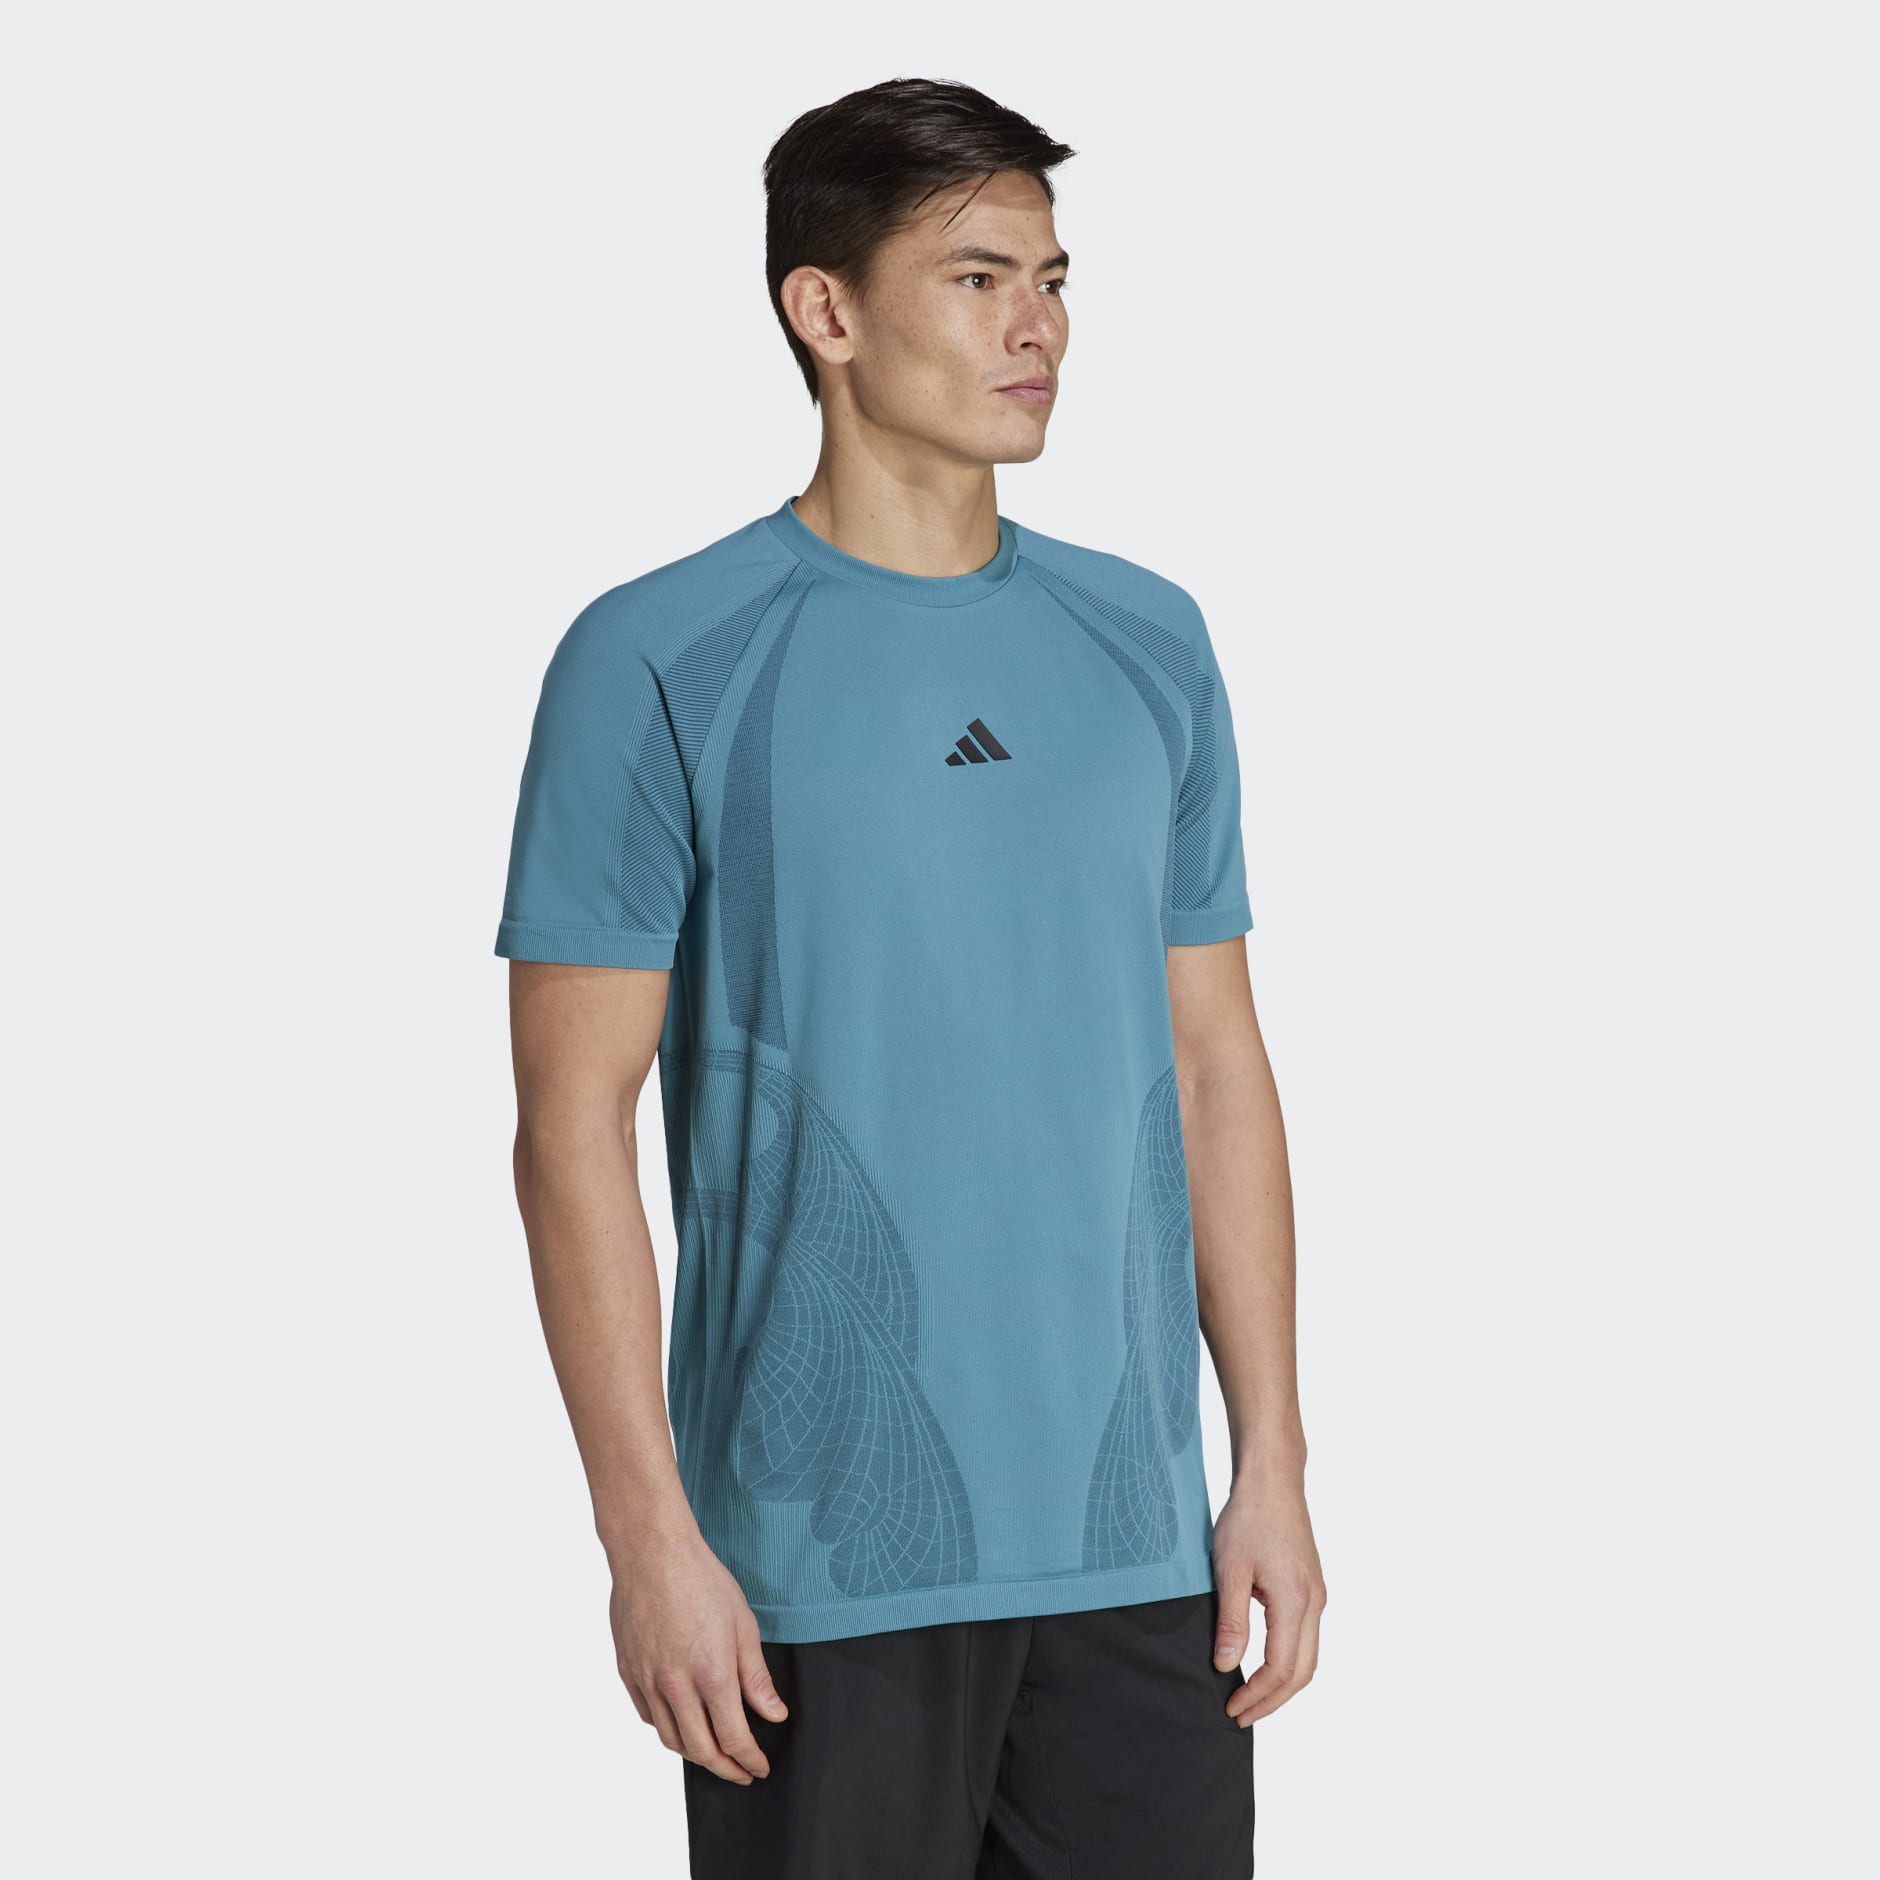 Men's Clothing - AEROREADY Pro Seamless Tennis Tee - Turquoise | adidas ...